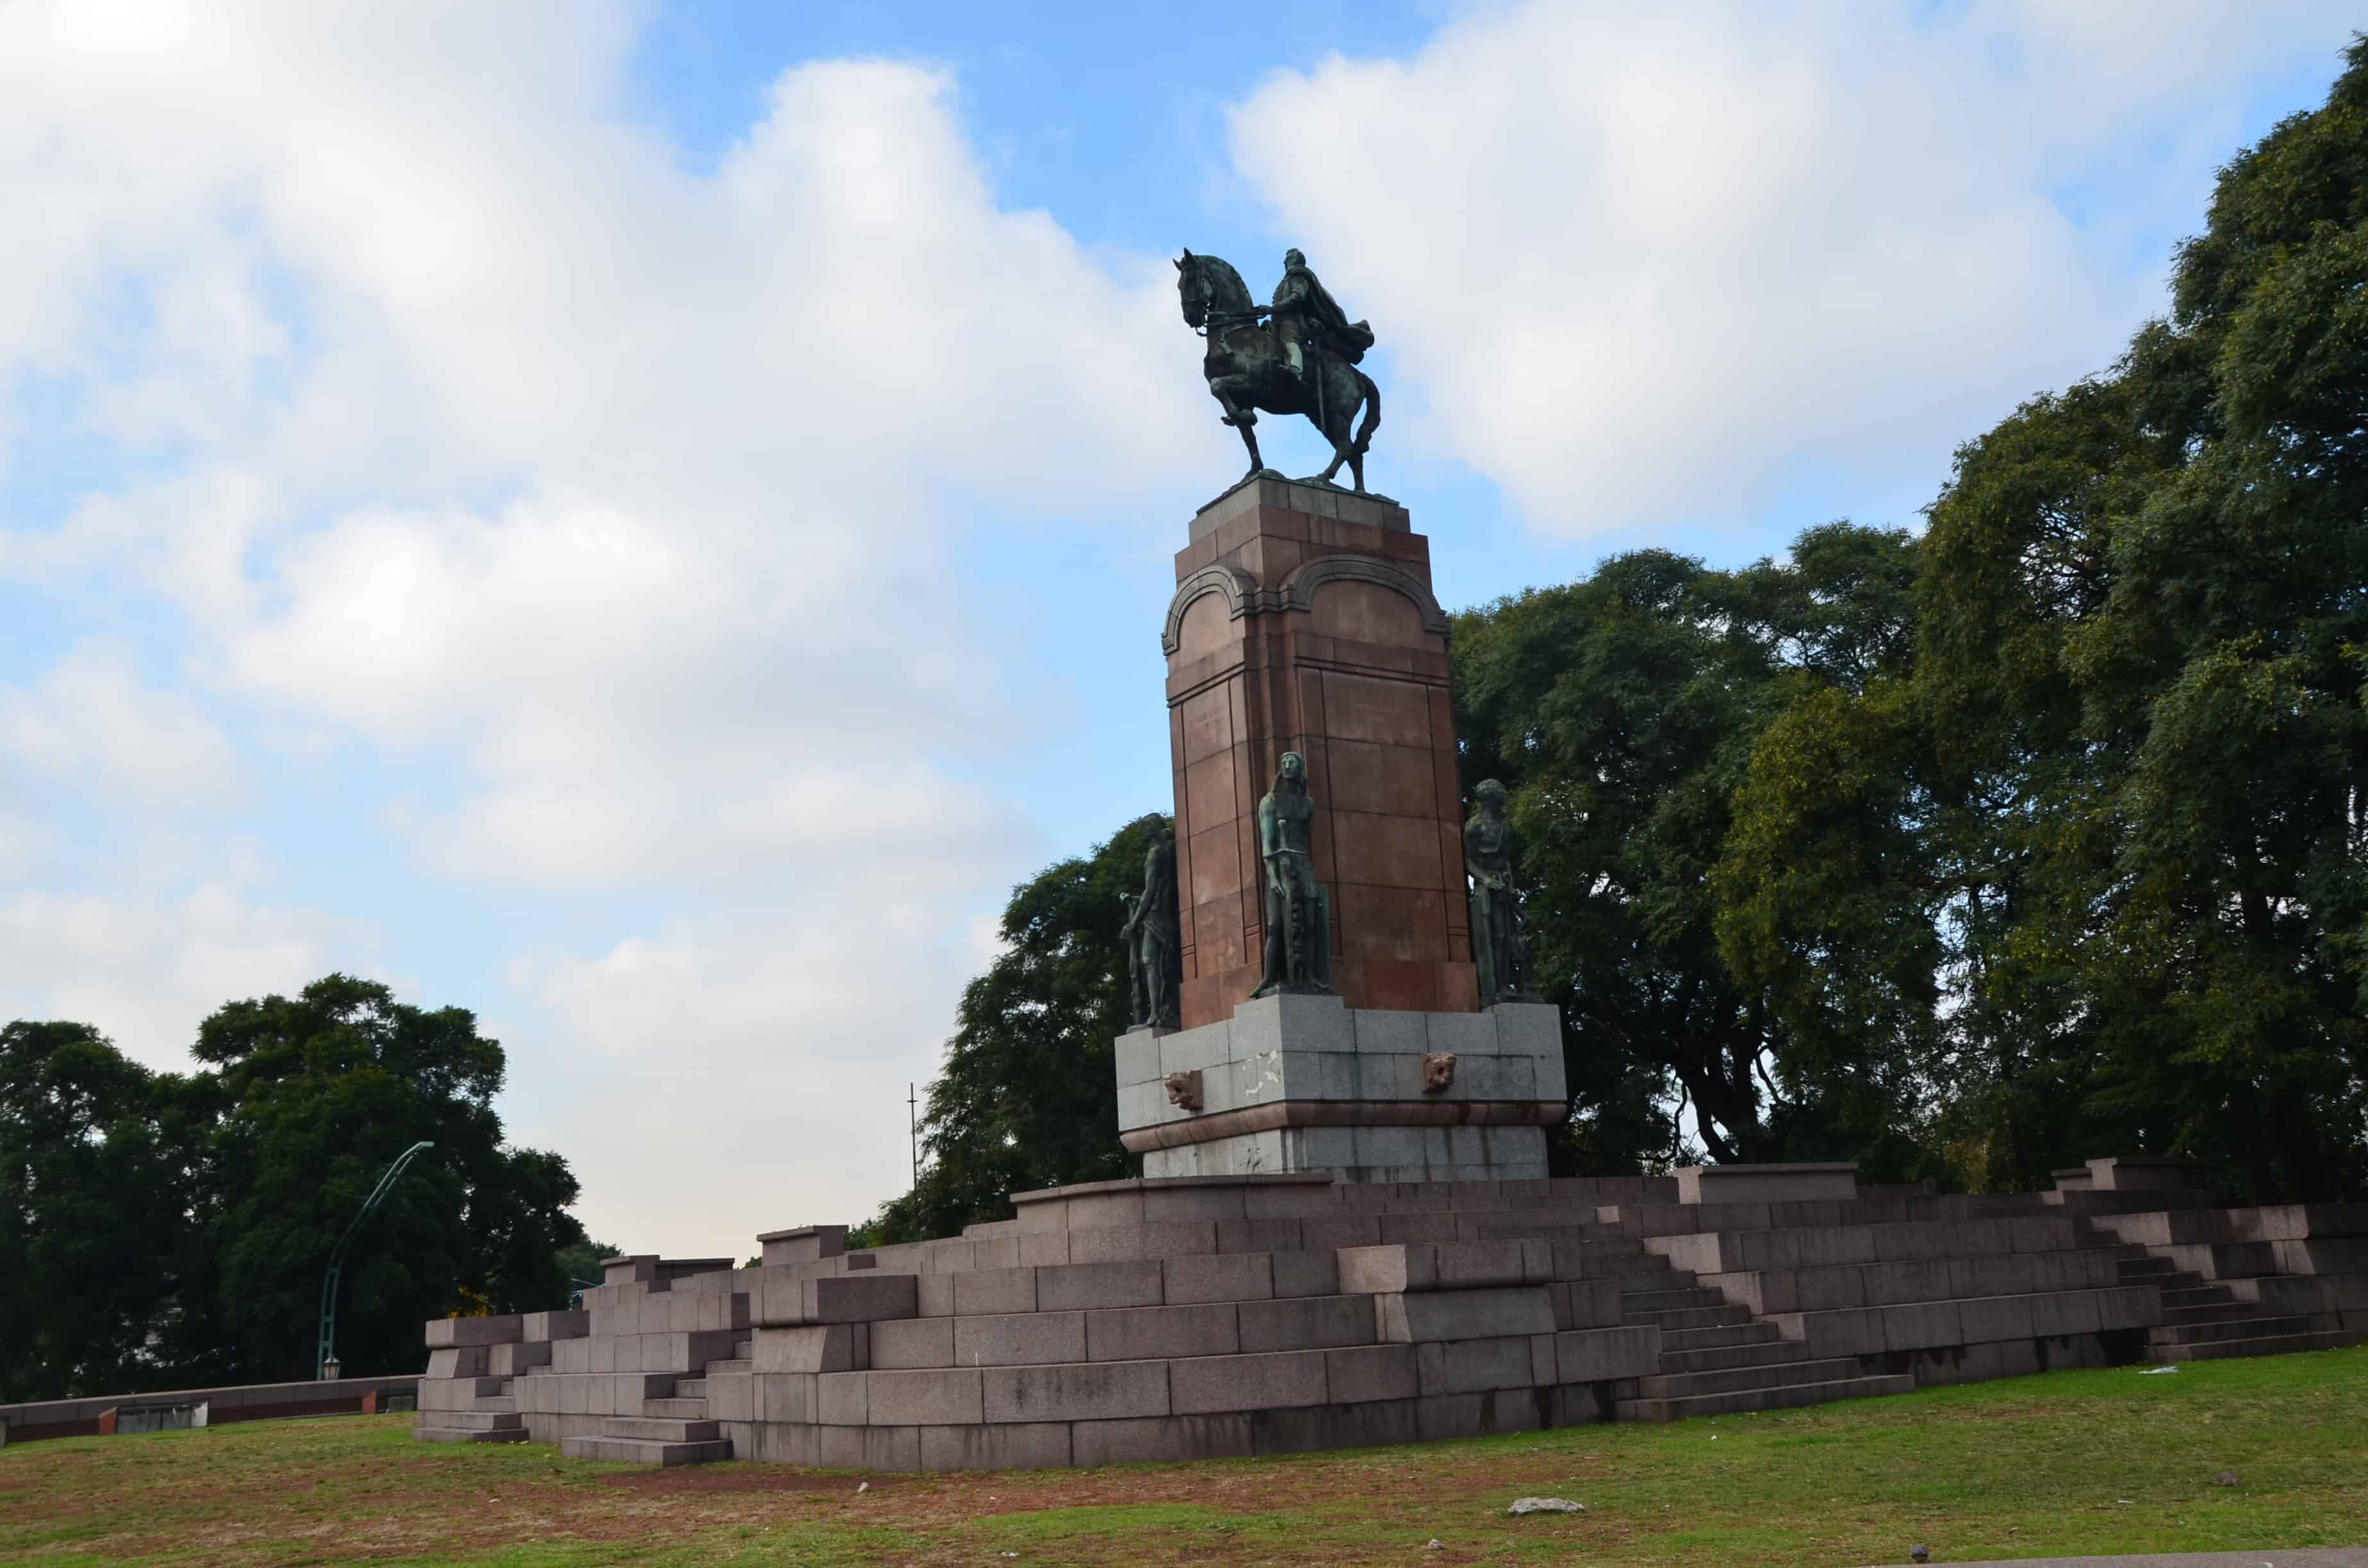 Carlos María de Alvear monument in Recoleta, Buenos Aires, Argentina